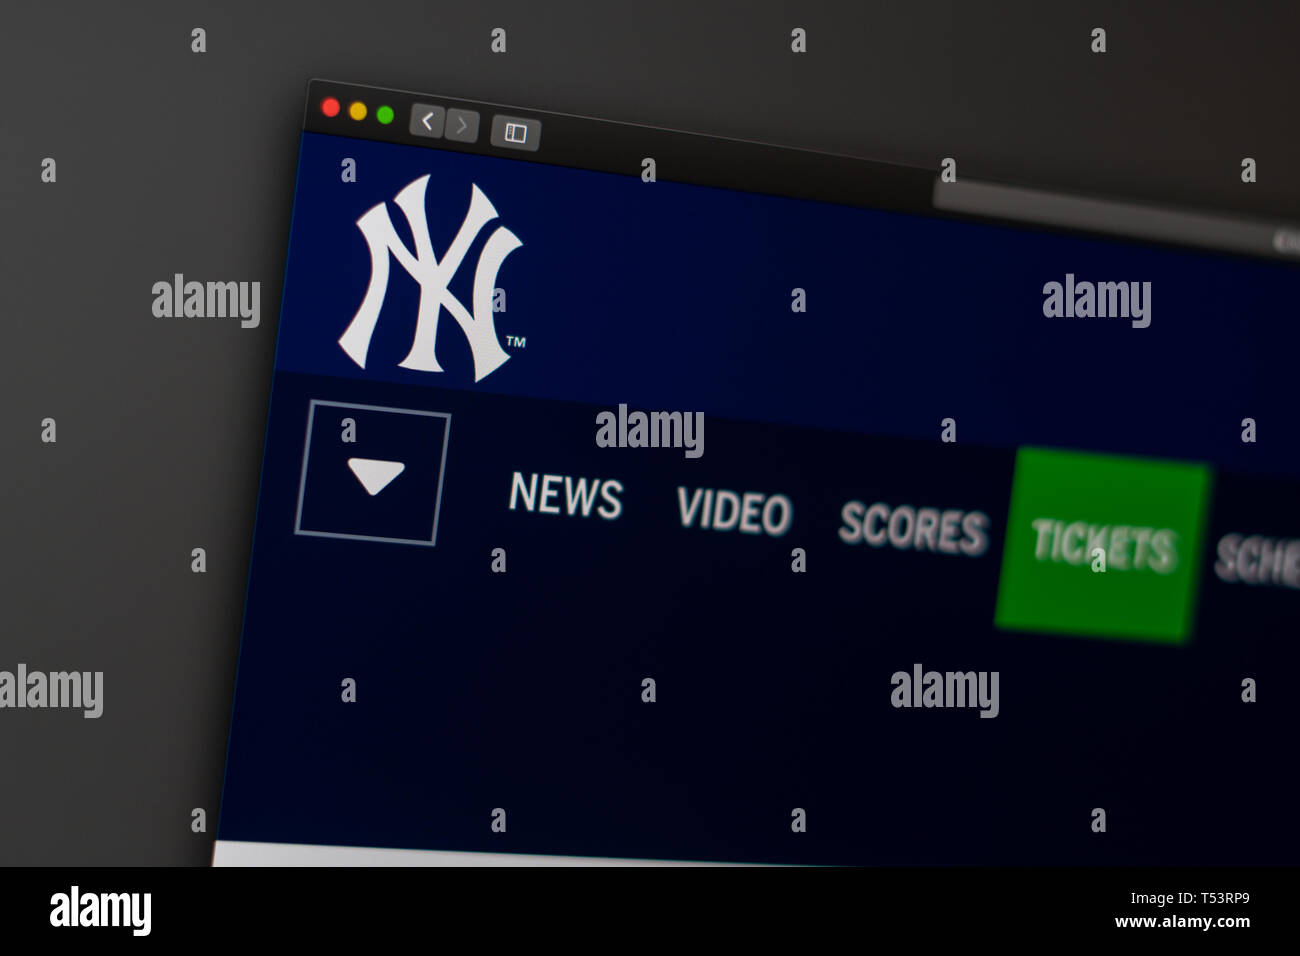 L'équipe de baseball des Yankees de New York d'accueil du site. Close up de logo pour l'équipe. Peut être utilisé comme illustration pour les médias ou d'autres sites web Banque D'Images